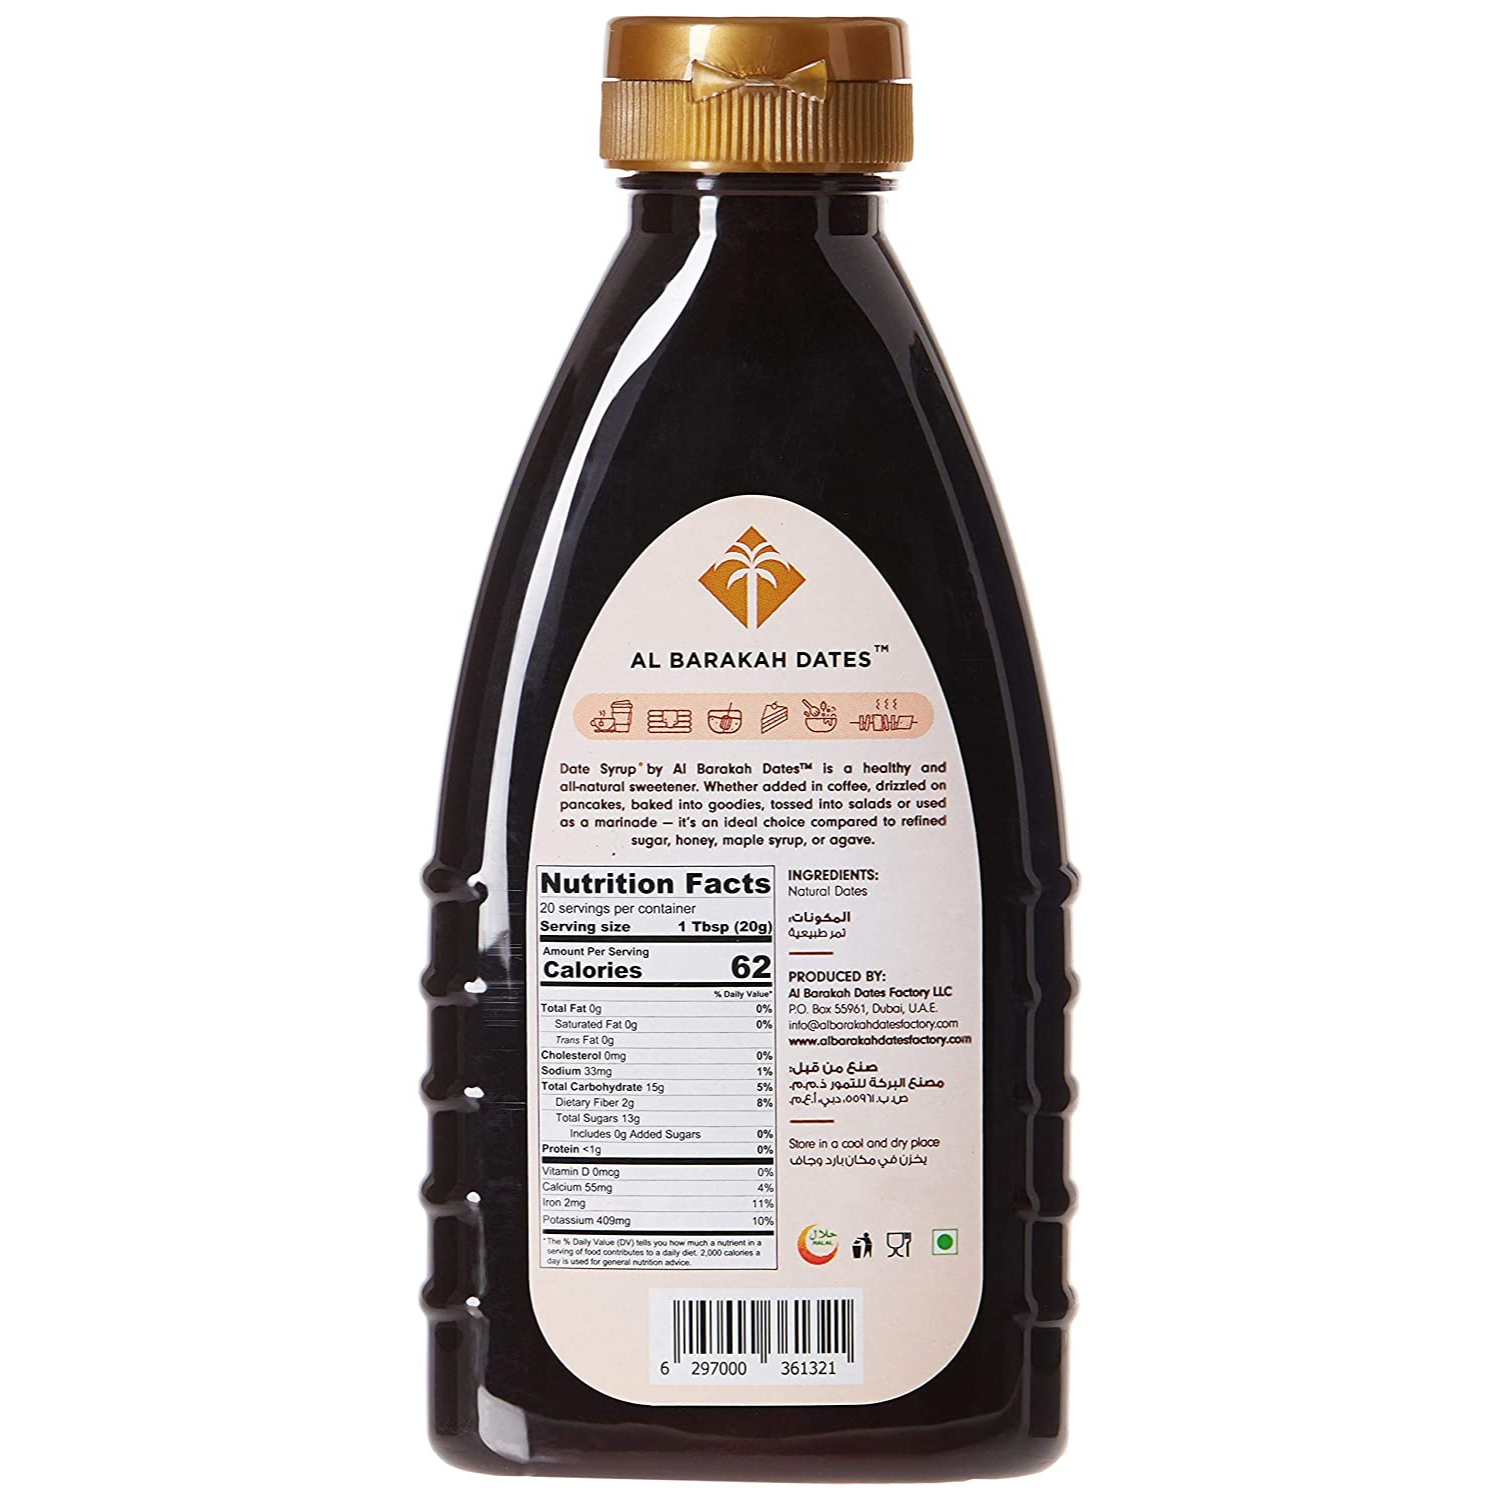 Al Barakah Date Syrup, 400g Bottle